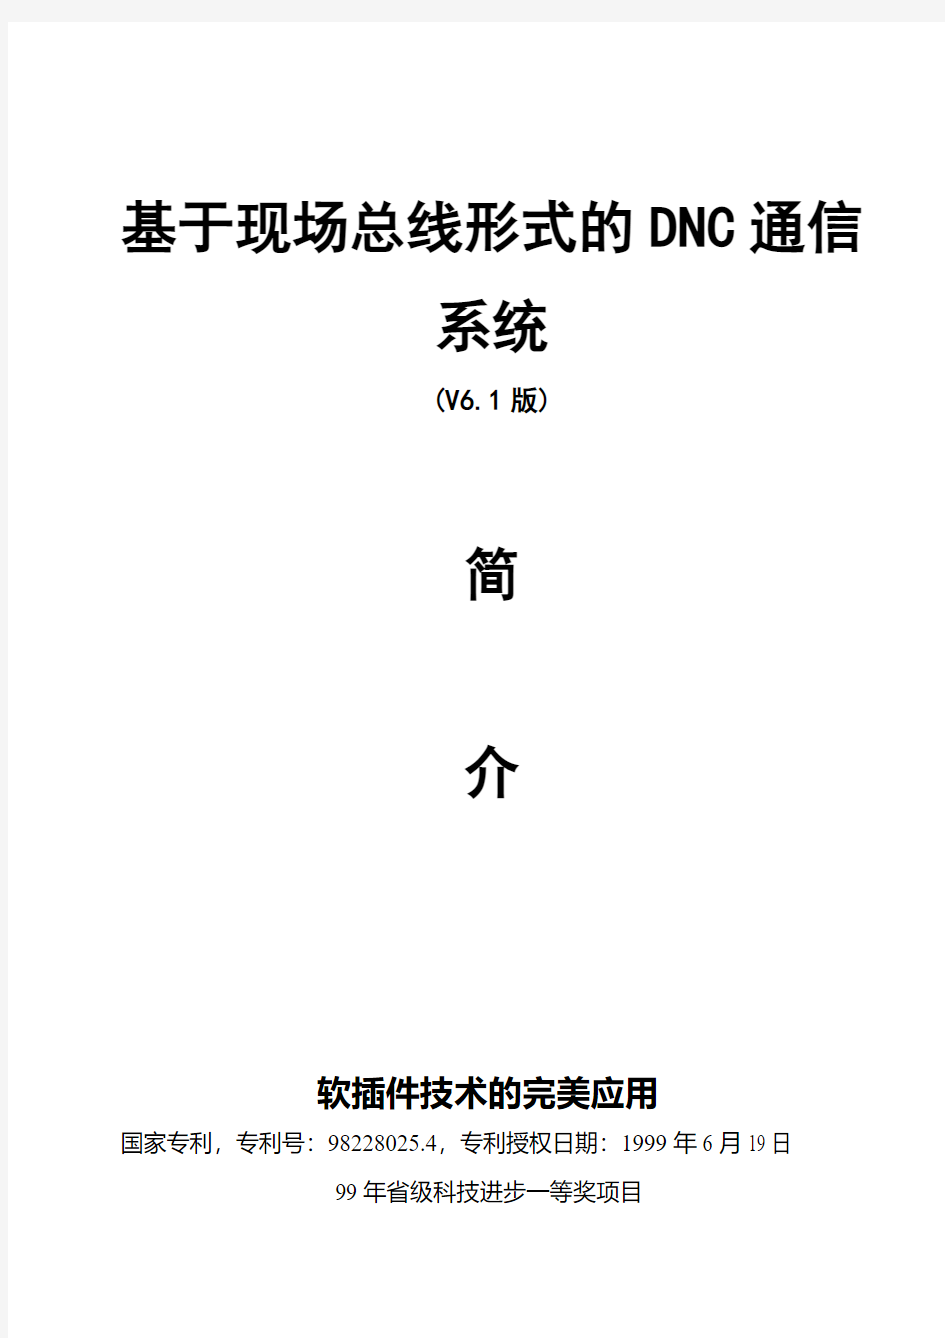 基于现场总线形式的DNC通信系统简介